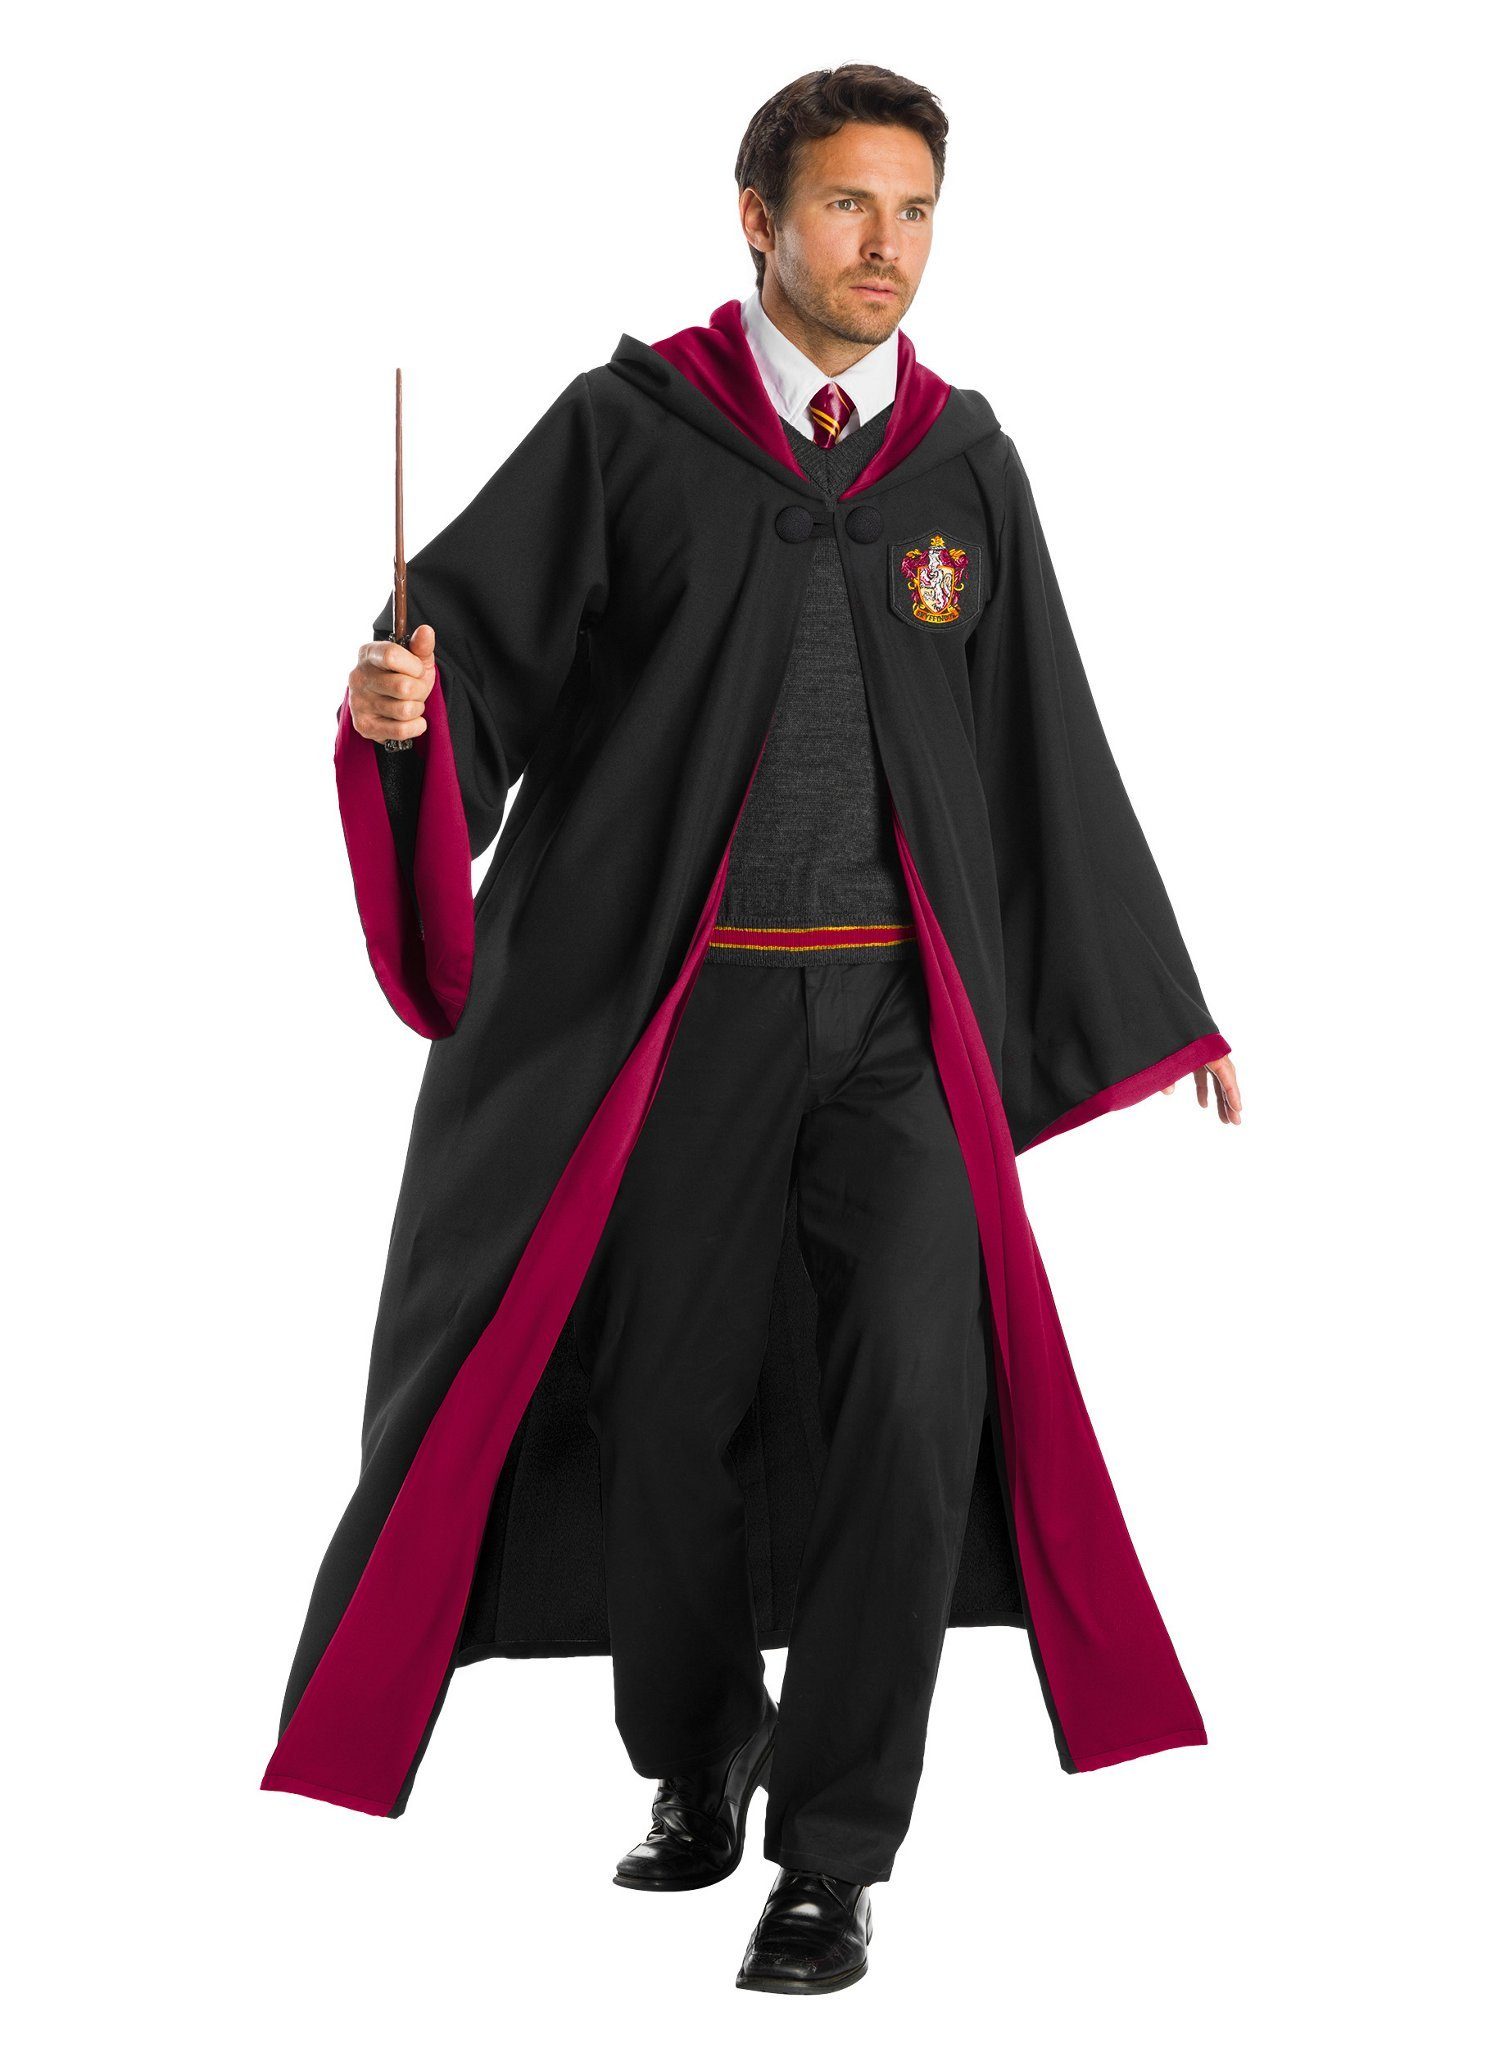 Charades Kostüm Harry Potter Gryffindor Premium, Hochwertiges Harry Potter Cosplay-Kostüm für Hogwarts-Zauberschüler